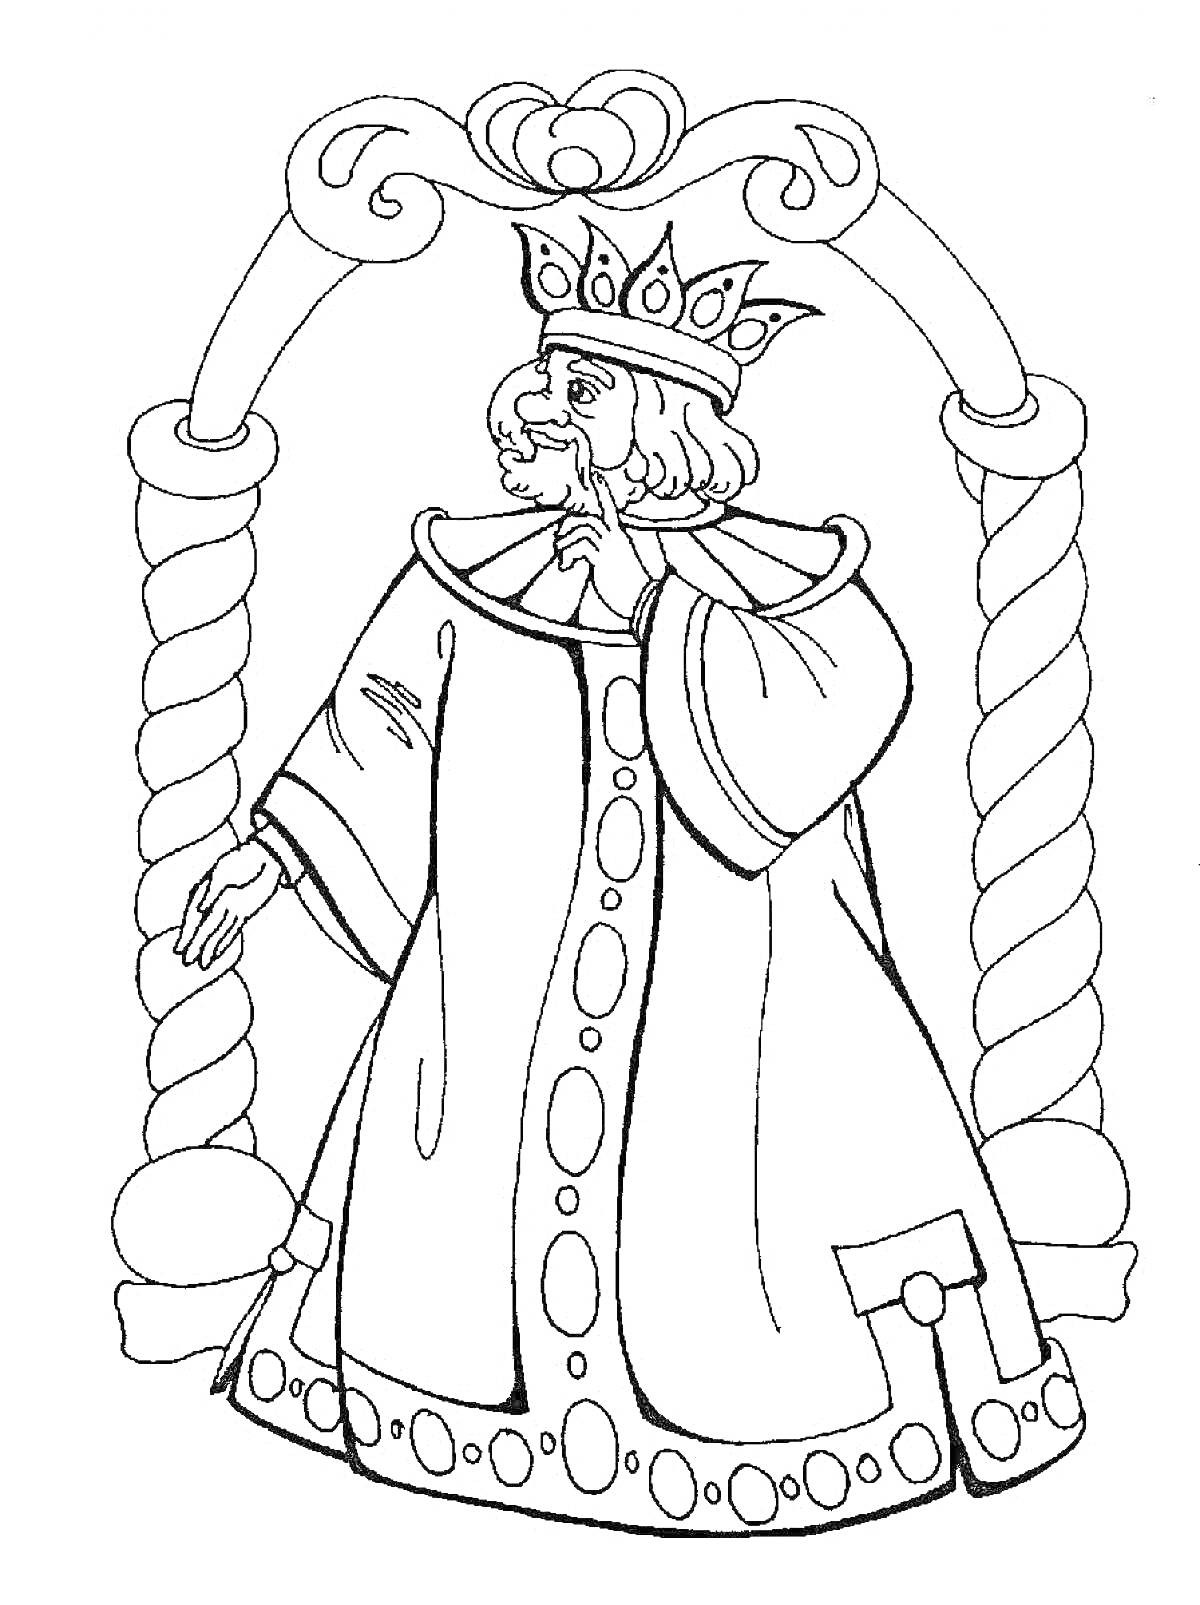 Раскраска Царь с короной под аркой с завитками и столбами